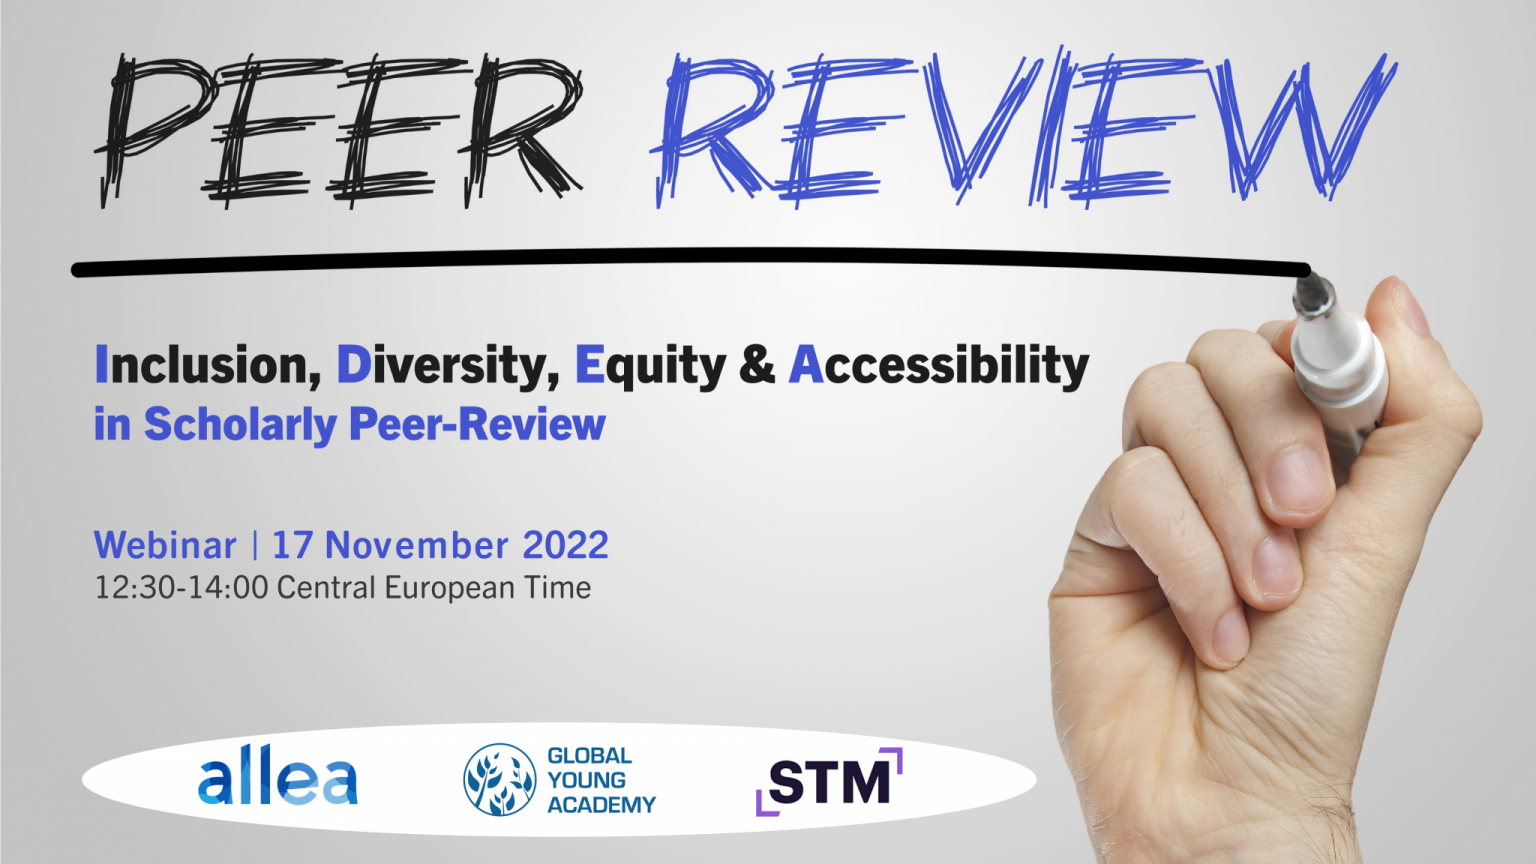 Inclusão, Diversidade, Equidade e Acessibilidade no Scholarly Peer-Review